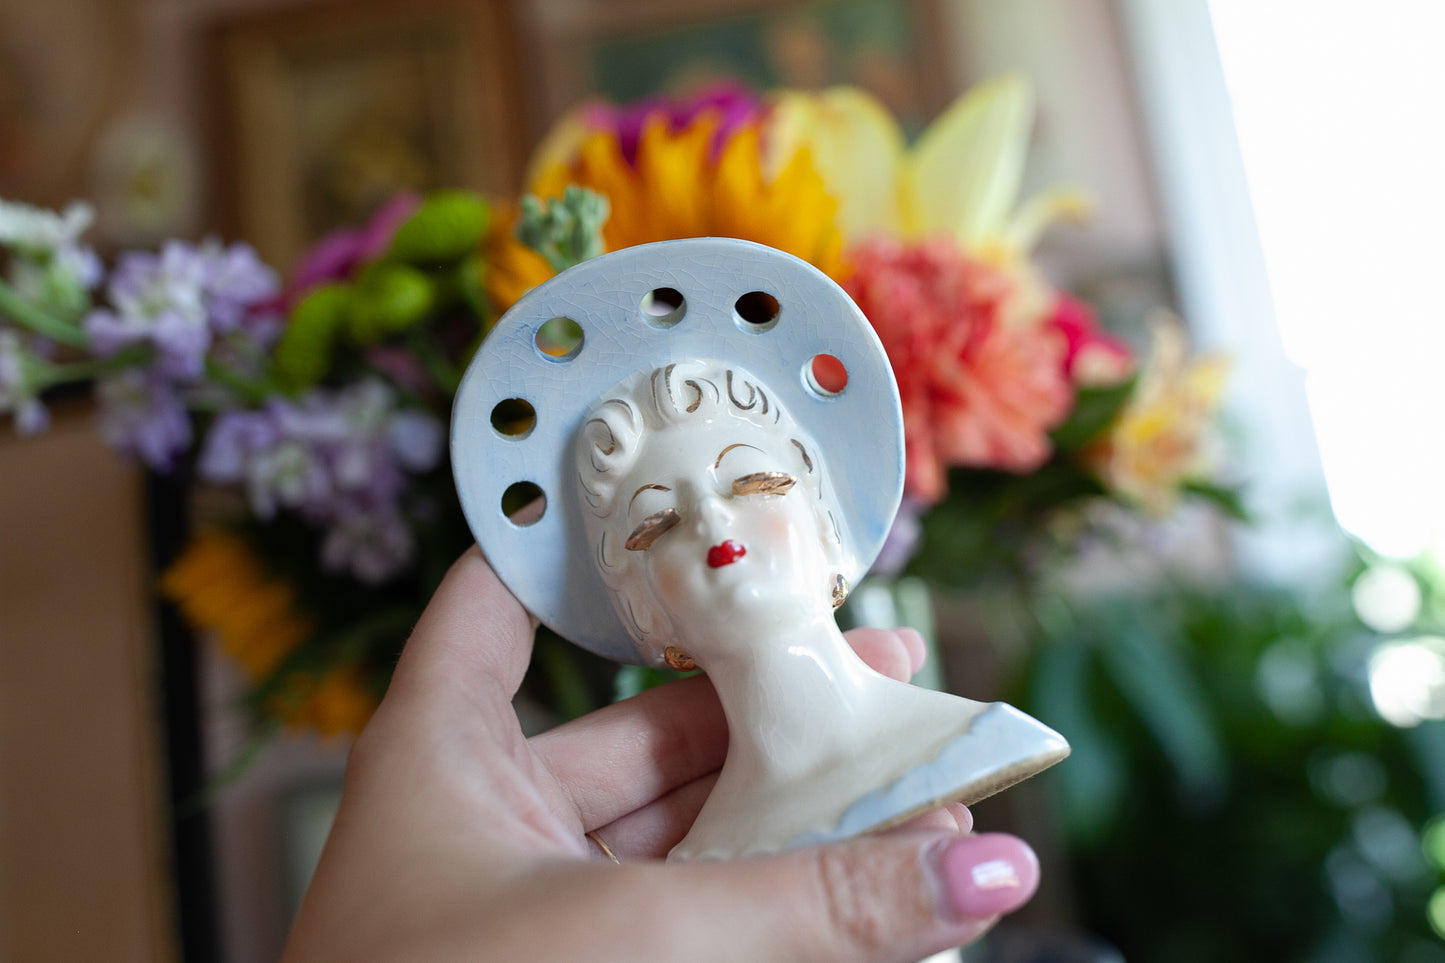 Vintage Lady Head Vase - Mini Head Vase Gold Lashes